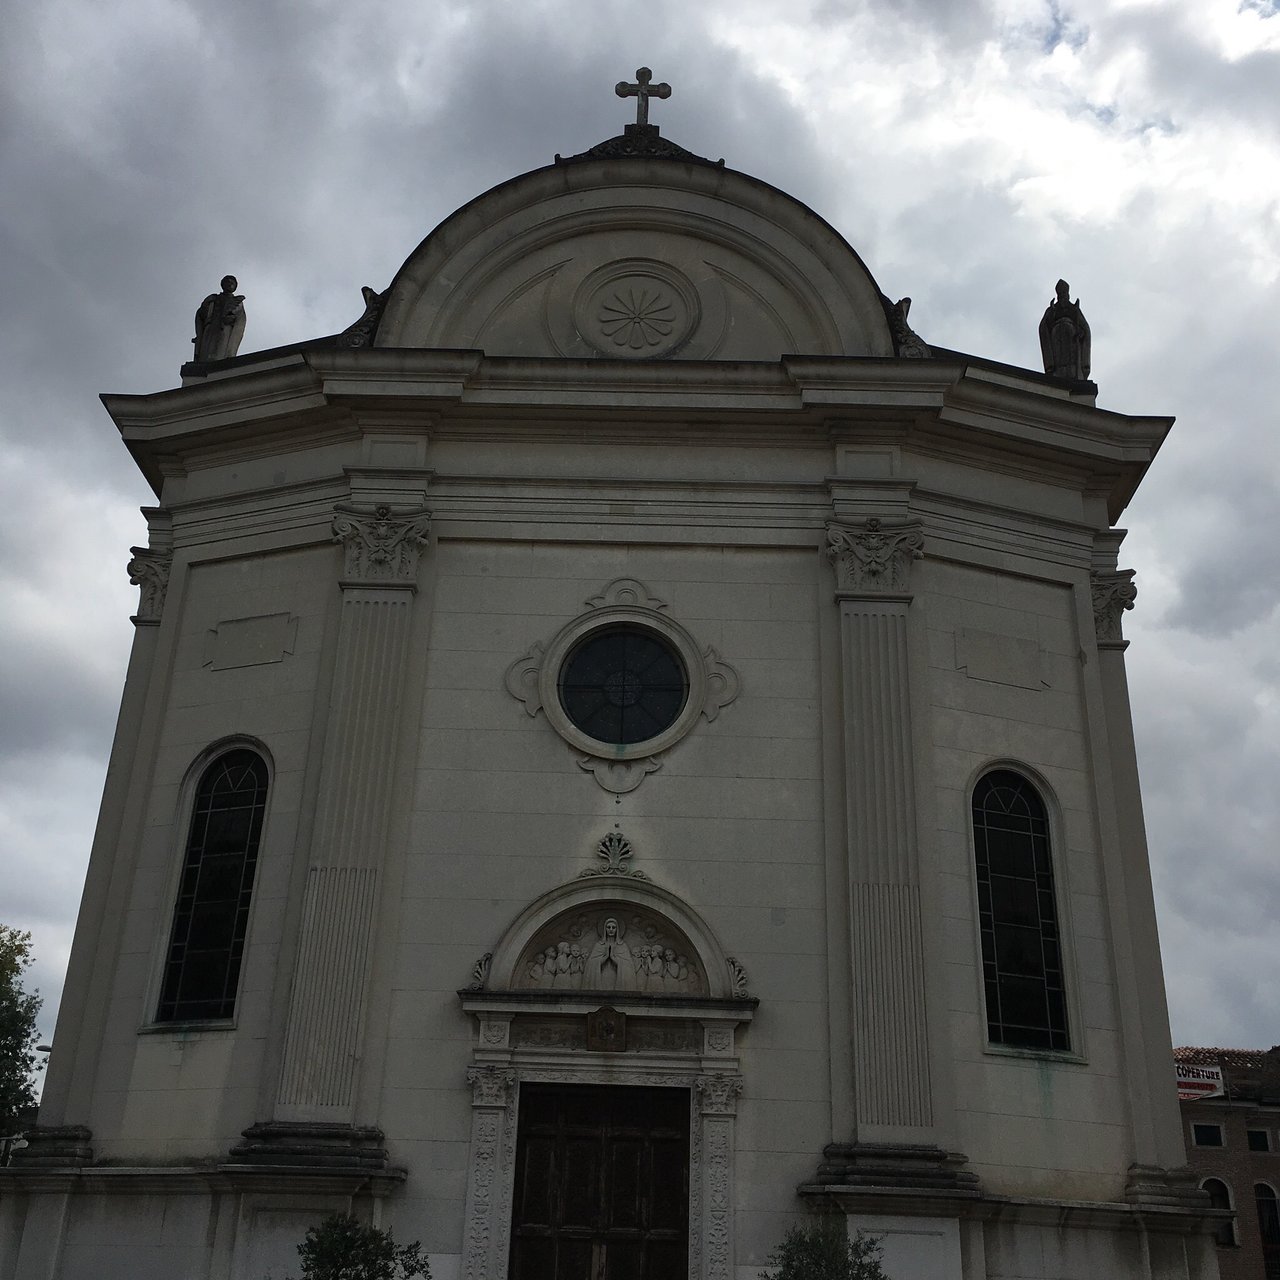 Parrocchia Bassanello in Padova S. Maria Assunta